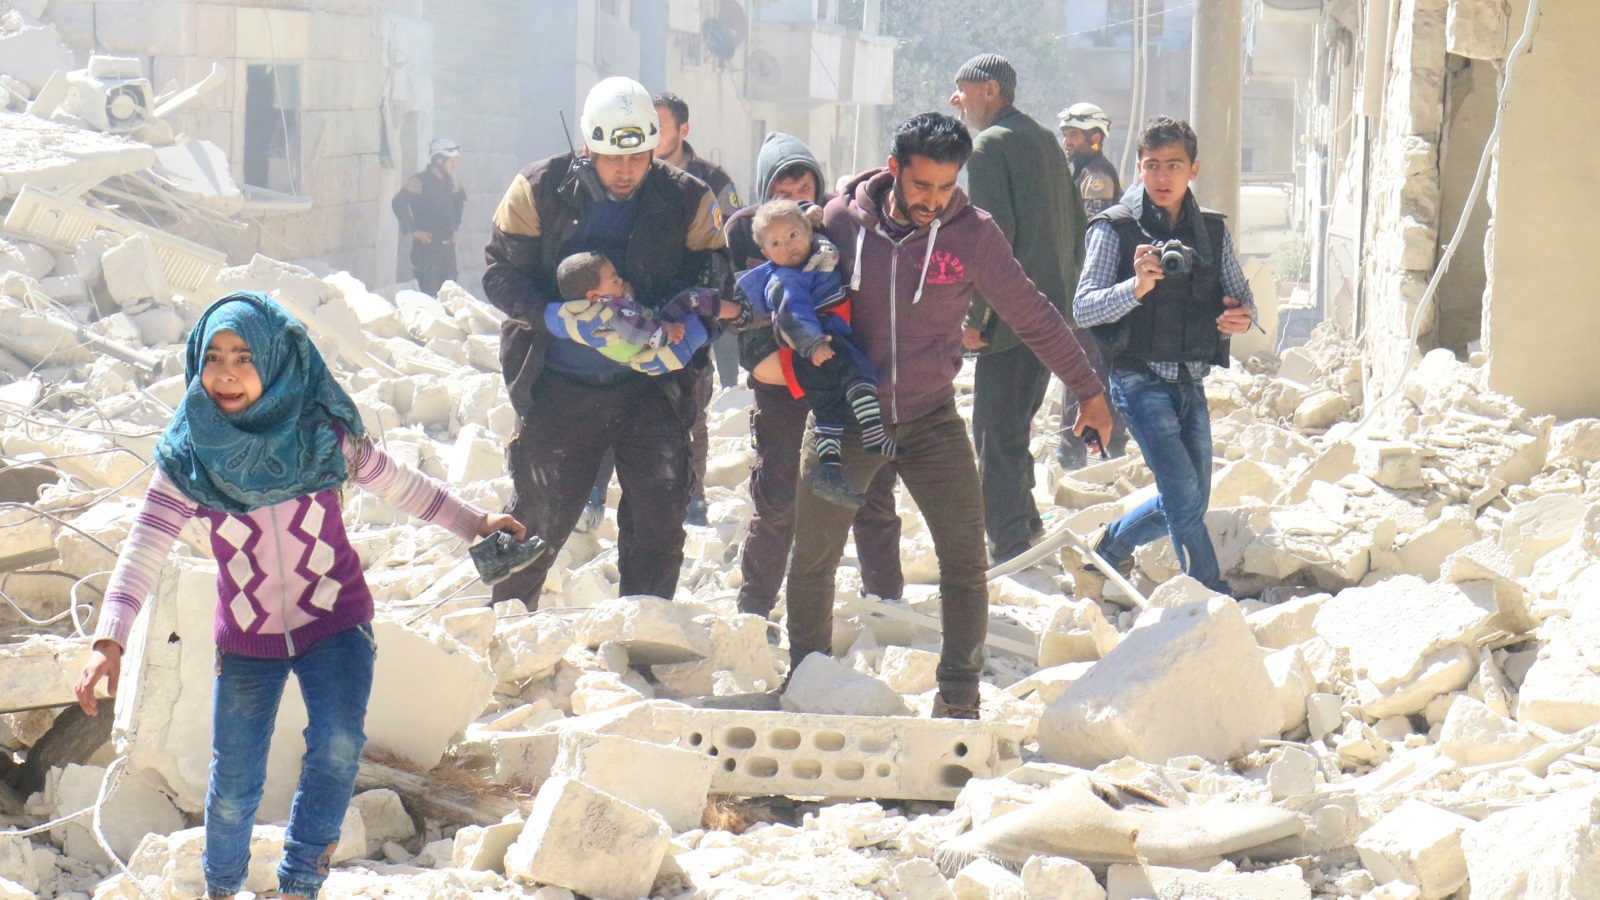 ‪الأطفال والمدنيون أبرز ضحايا الحرب التي عصفت بسوريا لسنوات‬ الأطفال والمدنيون أبرز ضحايا الحرب التي عصفت بسوريا لسنوات (رويترز)